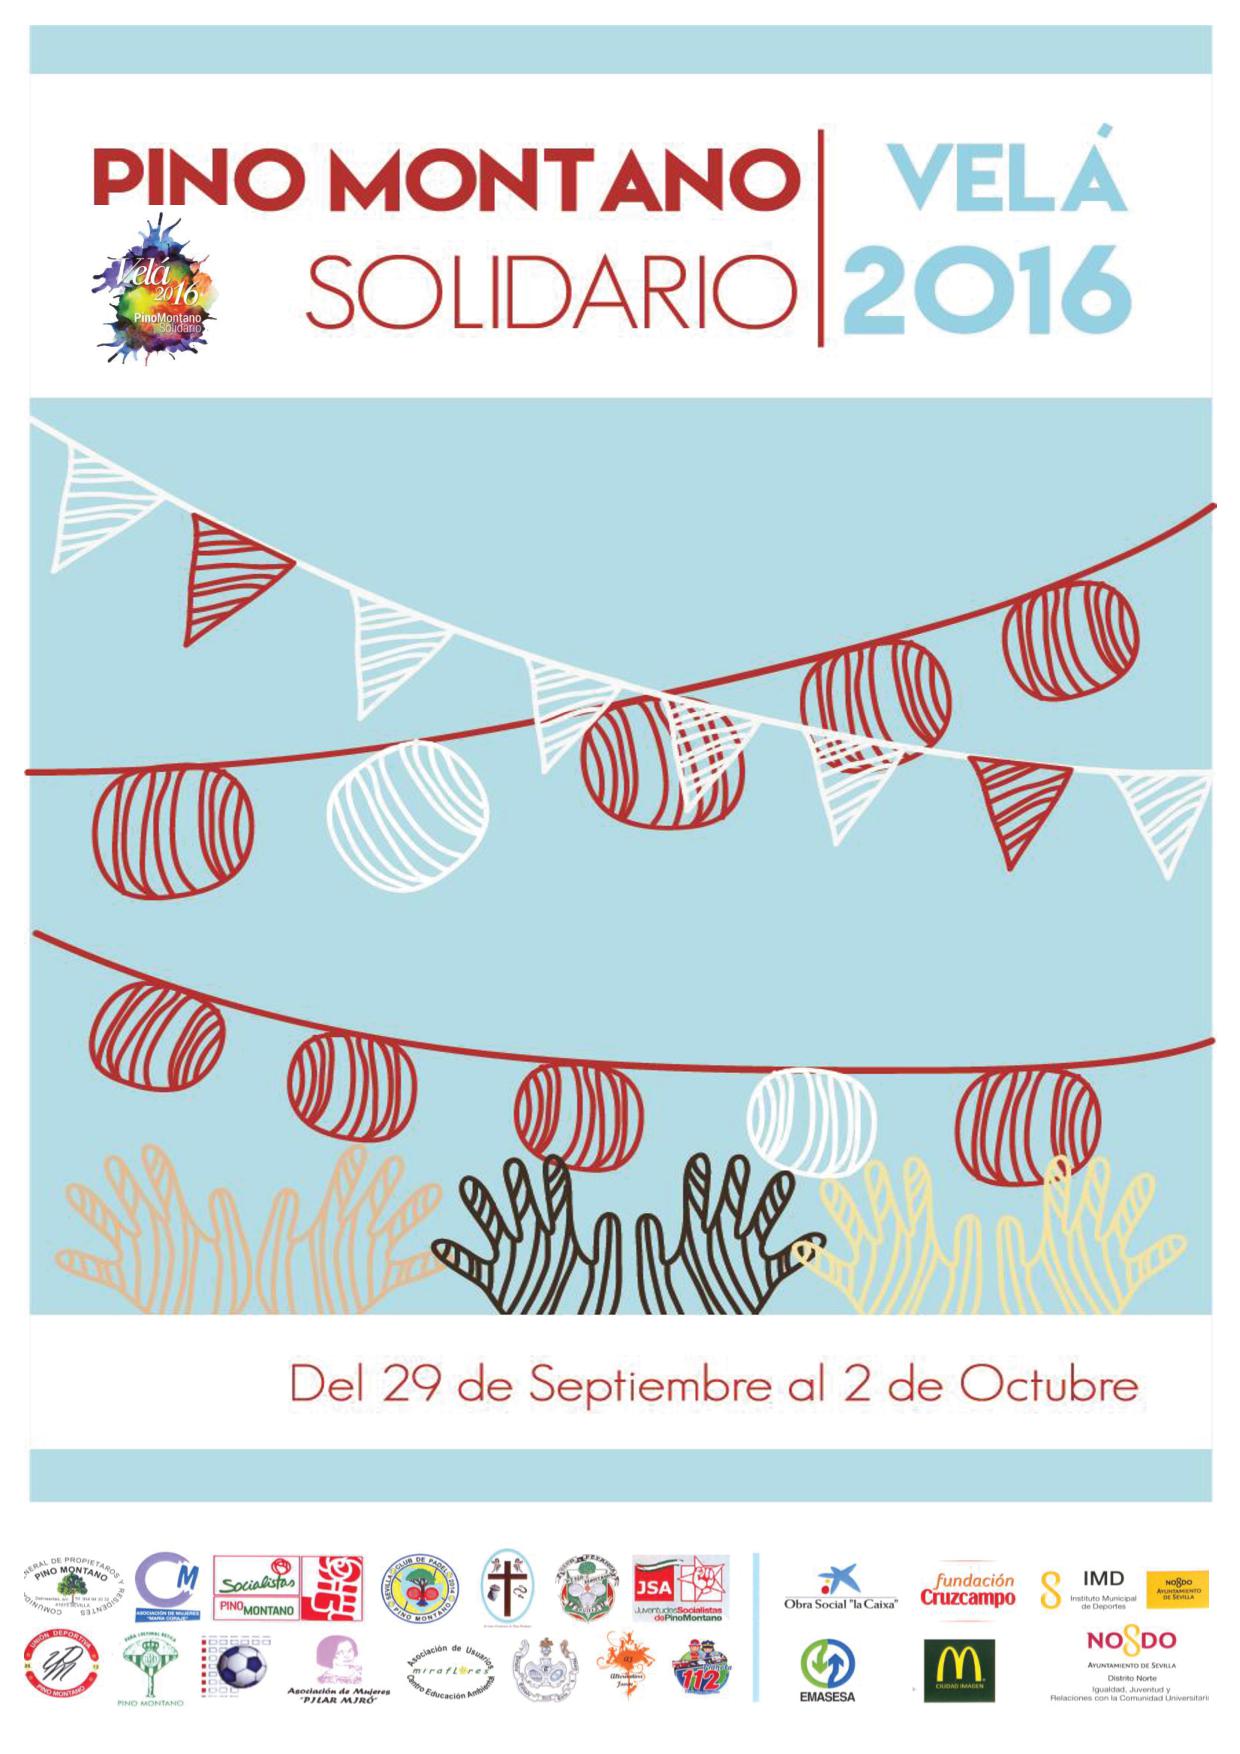 Programación Velá Solidaria 2016 Pino Montano